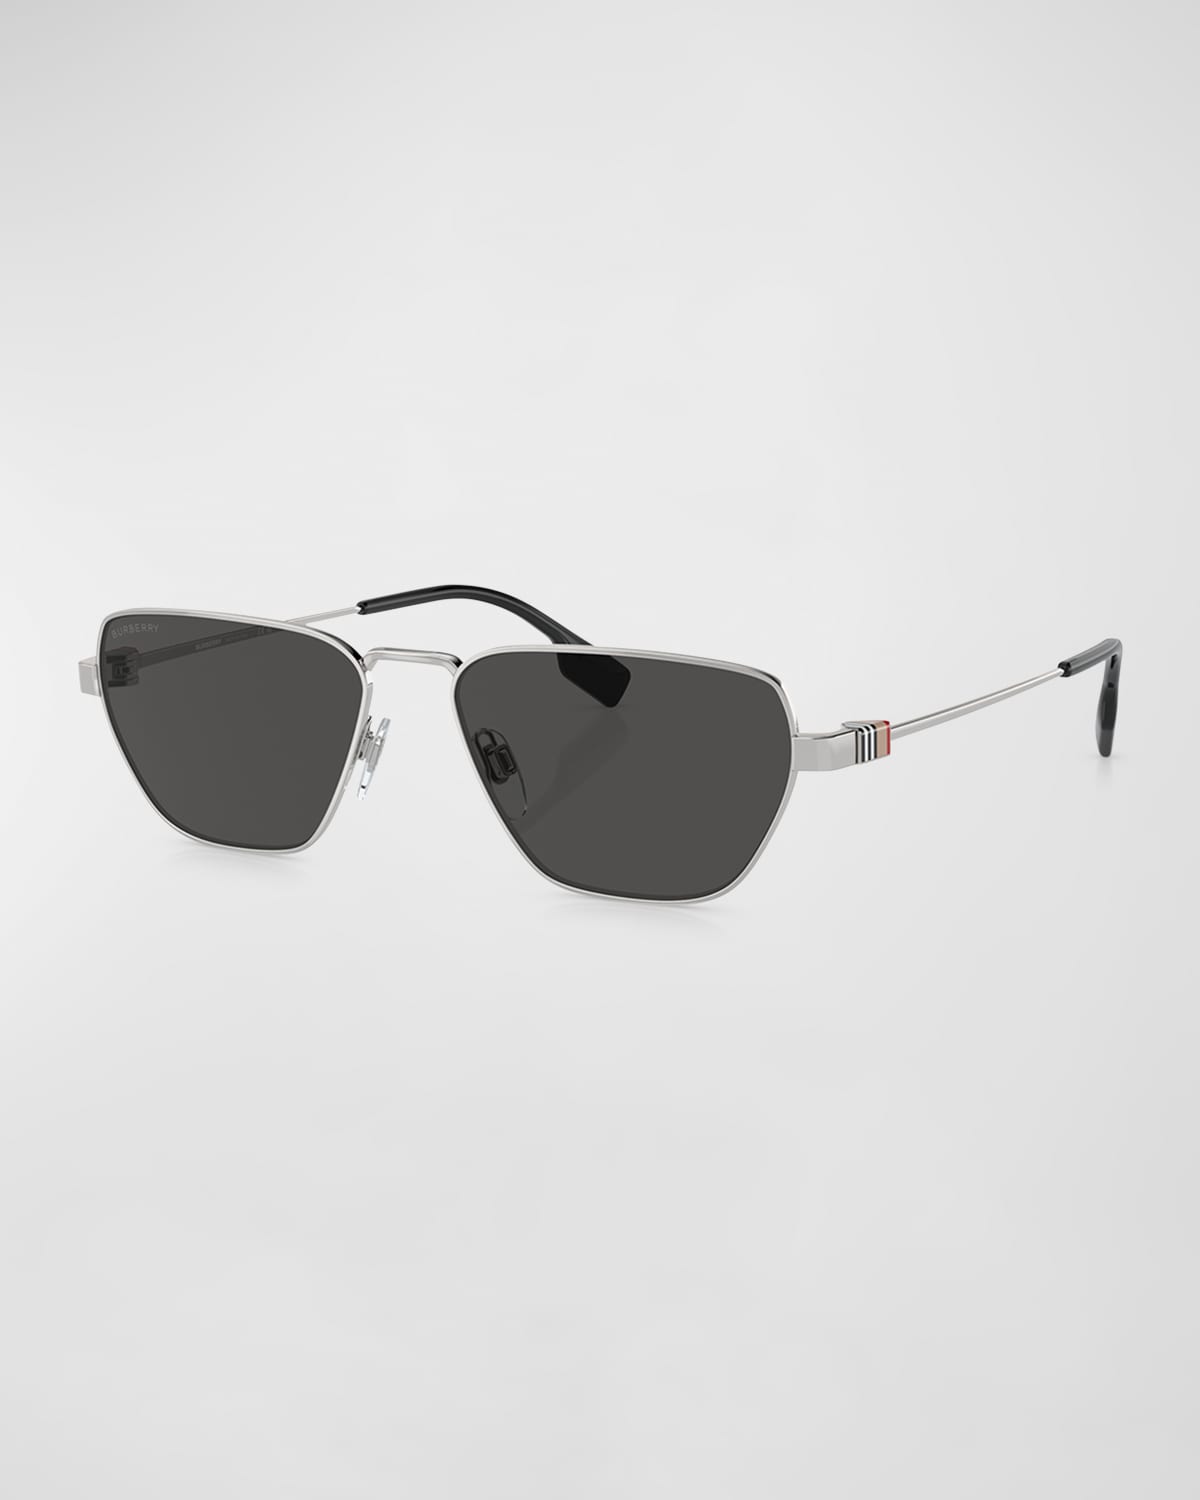 Burberry Men's Metal Square Sunglasses In Dark Grey